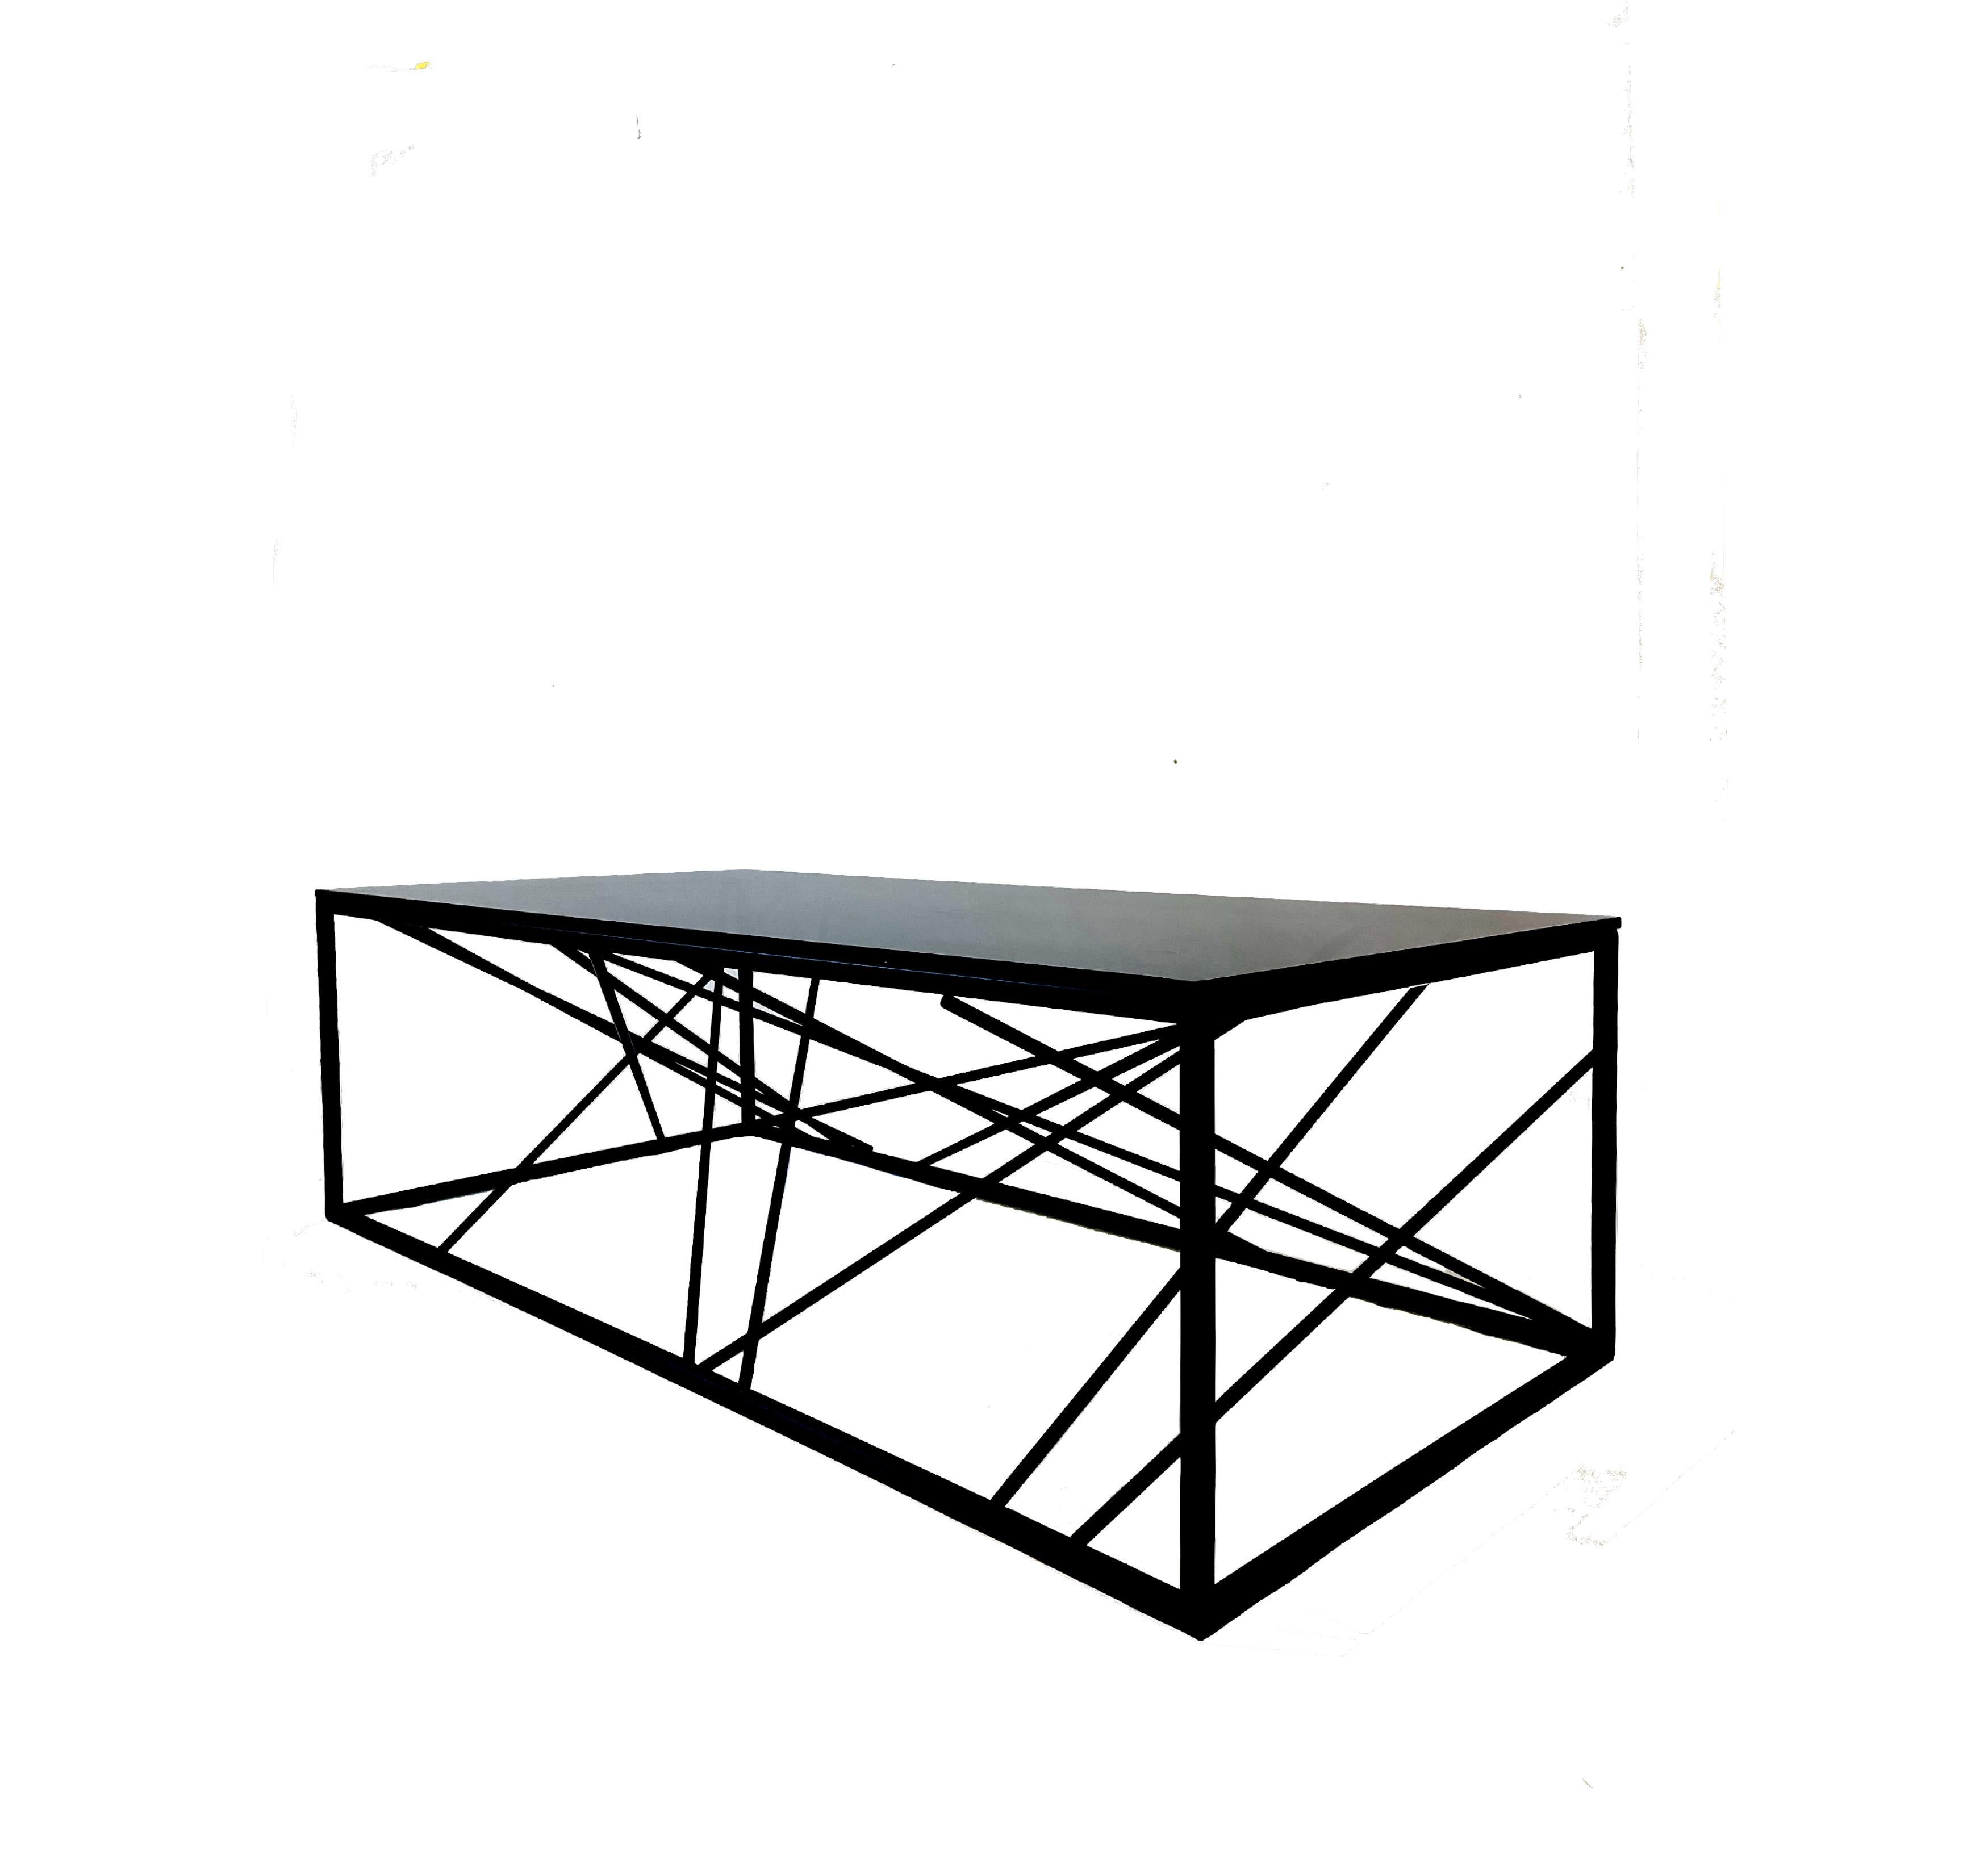 La table basse Nest est conçue et finie à la main dans notre studio de Toronto, Morgan Clayhall.

La console Nest s'inspire du design rustique et raffiné d'un nid d'oiseau, contenu dans une structure rigide. Le Design/One crée un moment de détente